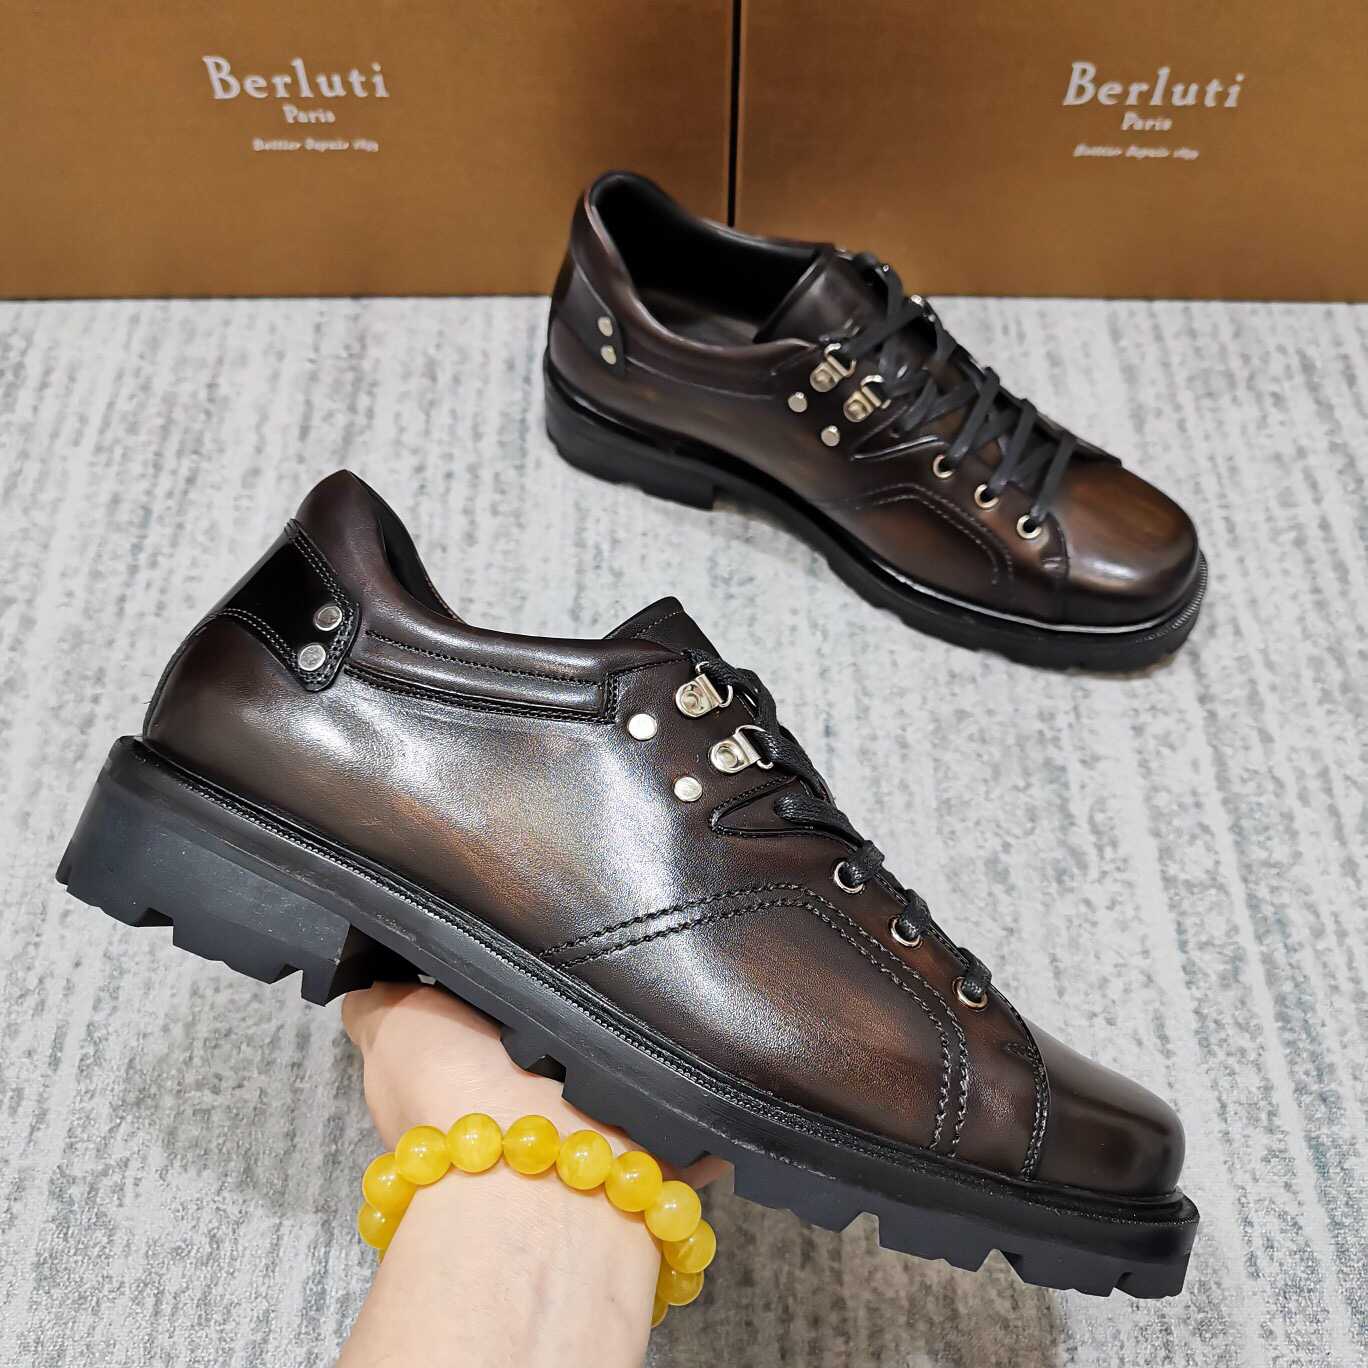 名品伯鲁提男士皮鞋 名品伯鲁提男鞋商城 BERLUTI 布鲁提 Brunico 小牛皮厚底德比鞋 